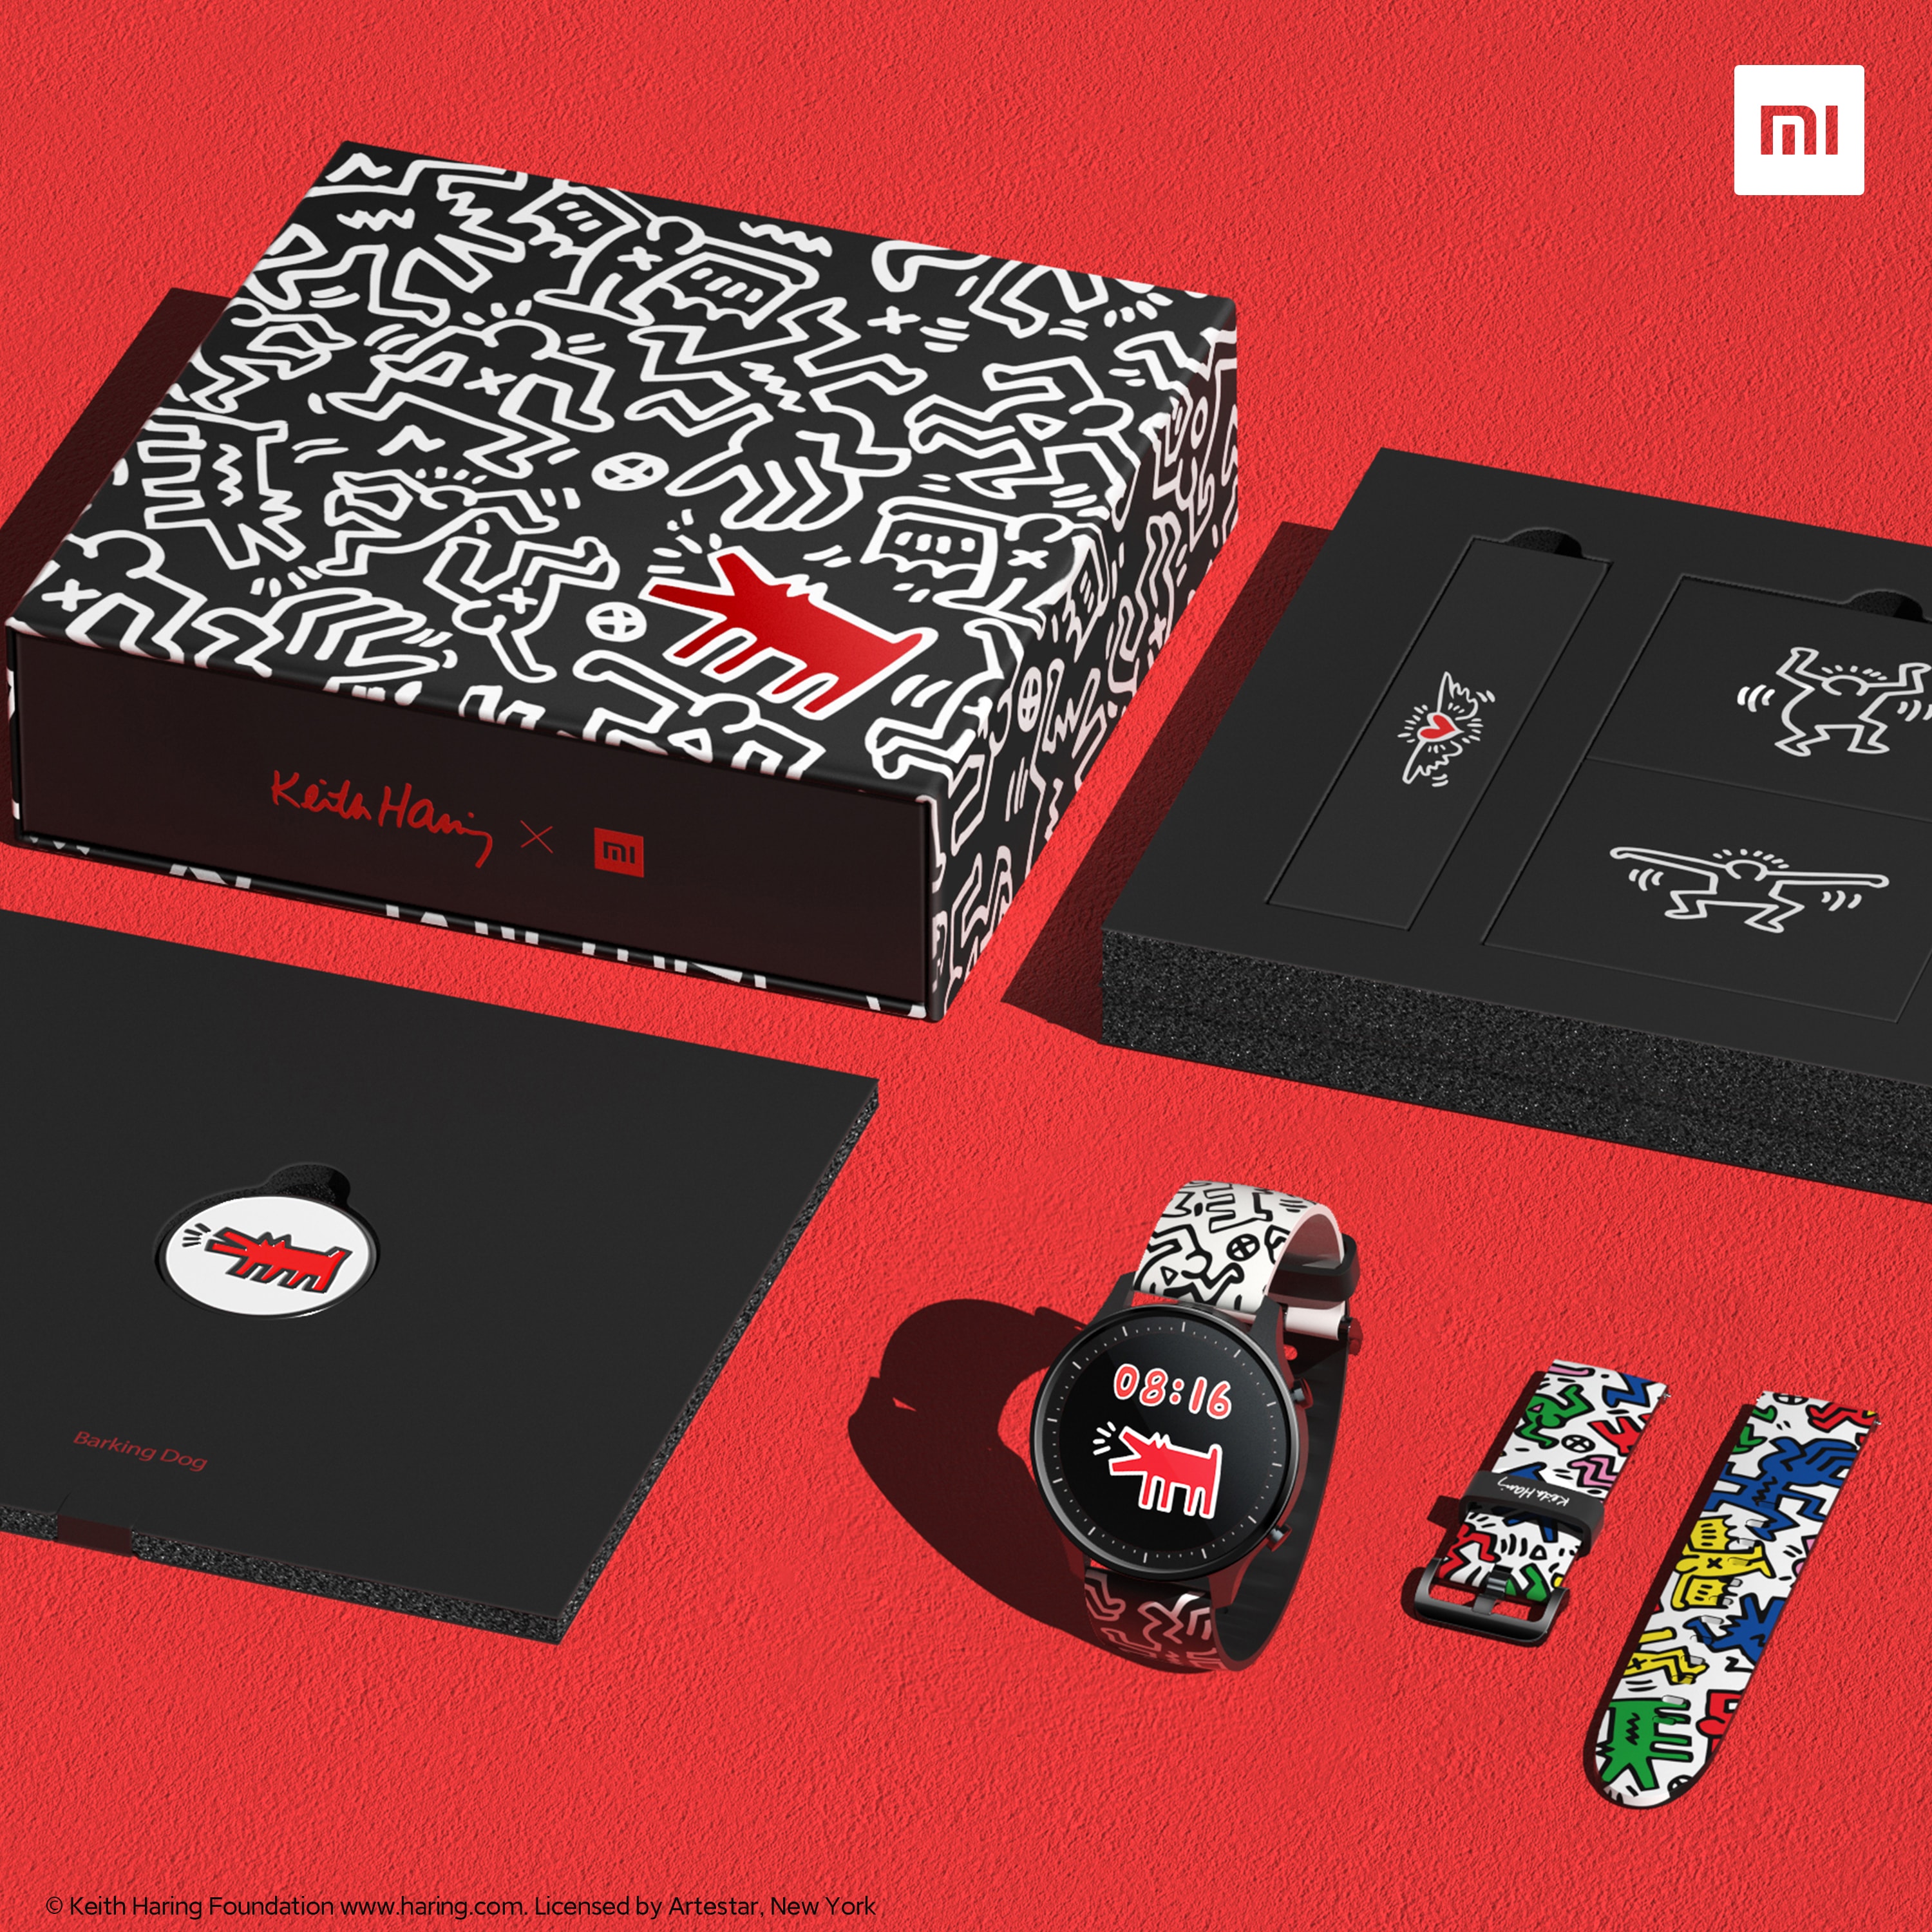 小米手表 Color 携手 Keith Haring 发布联乘定制款礼盒